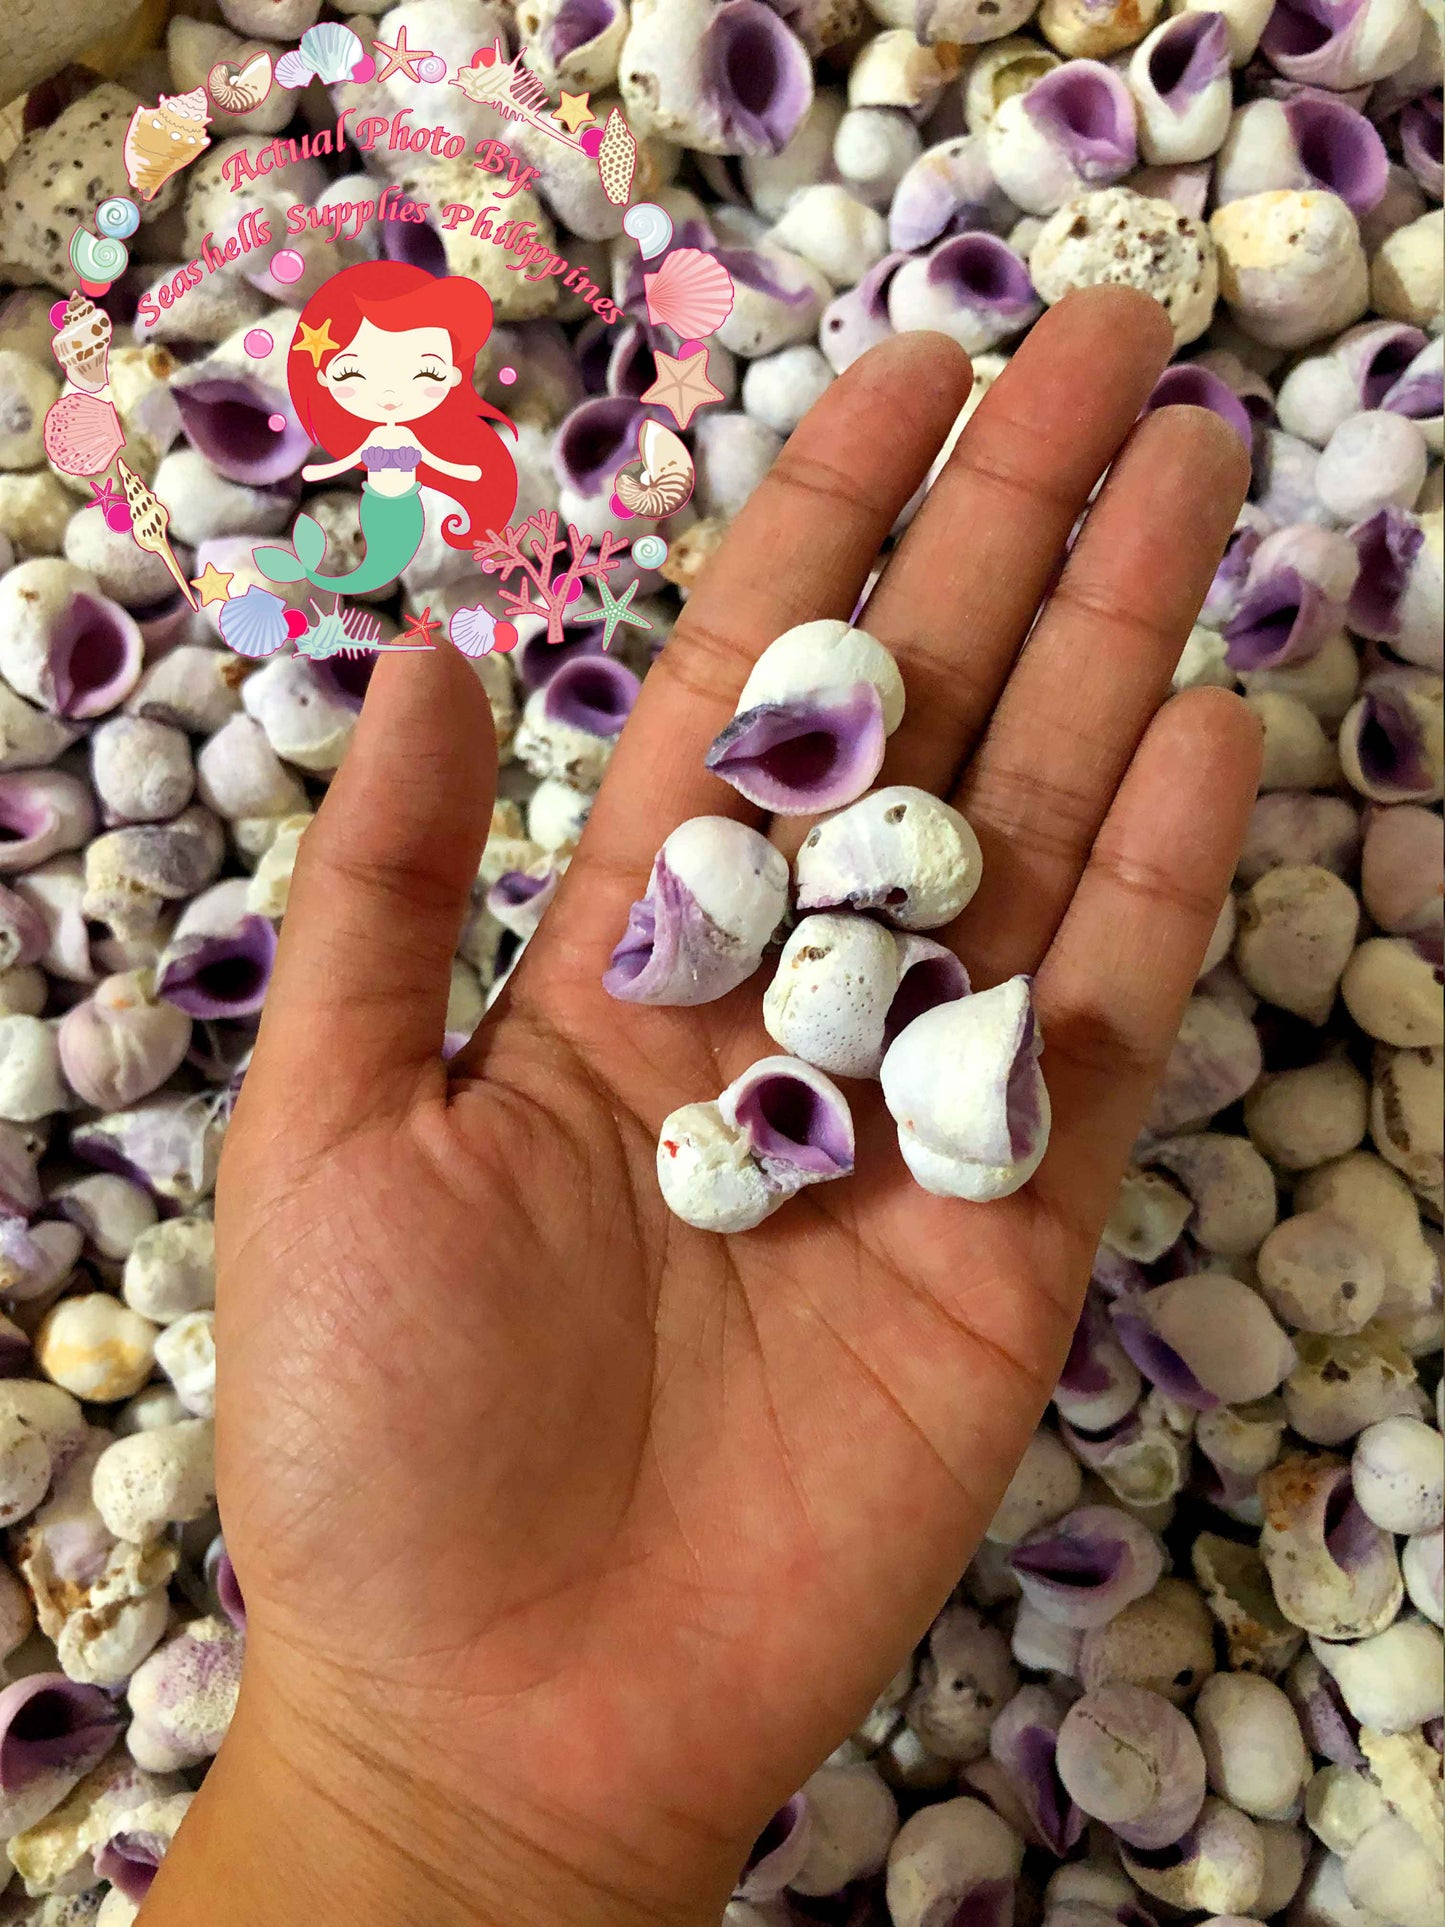 1 Kilo | Cebu Beauty | Violet Coral Shell | Seashells | Sea shells